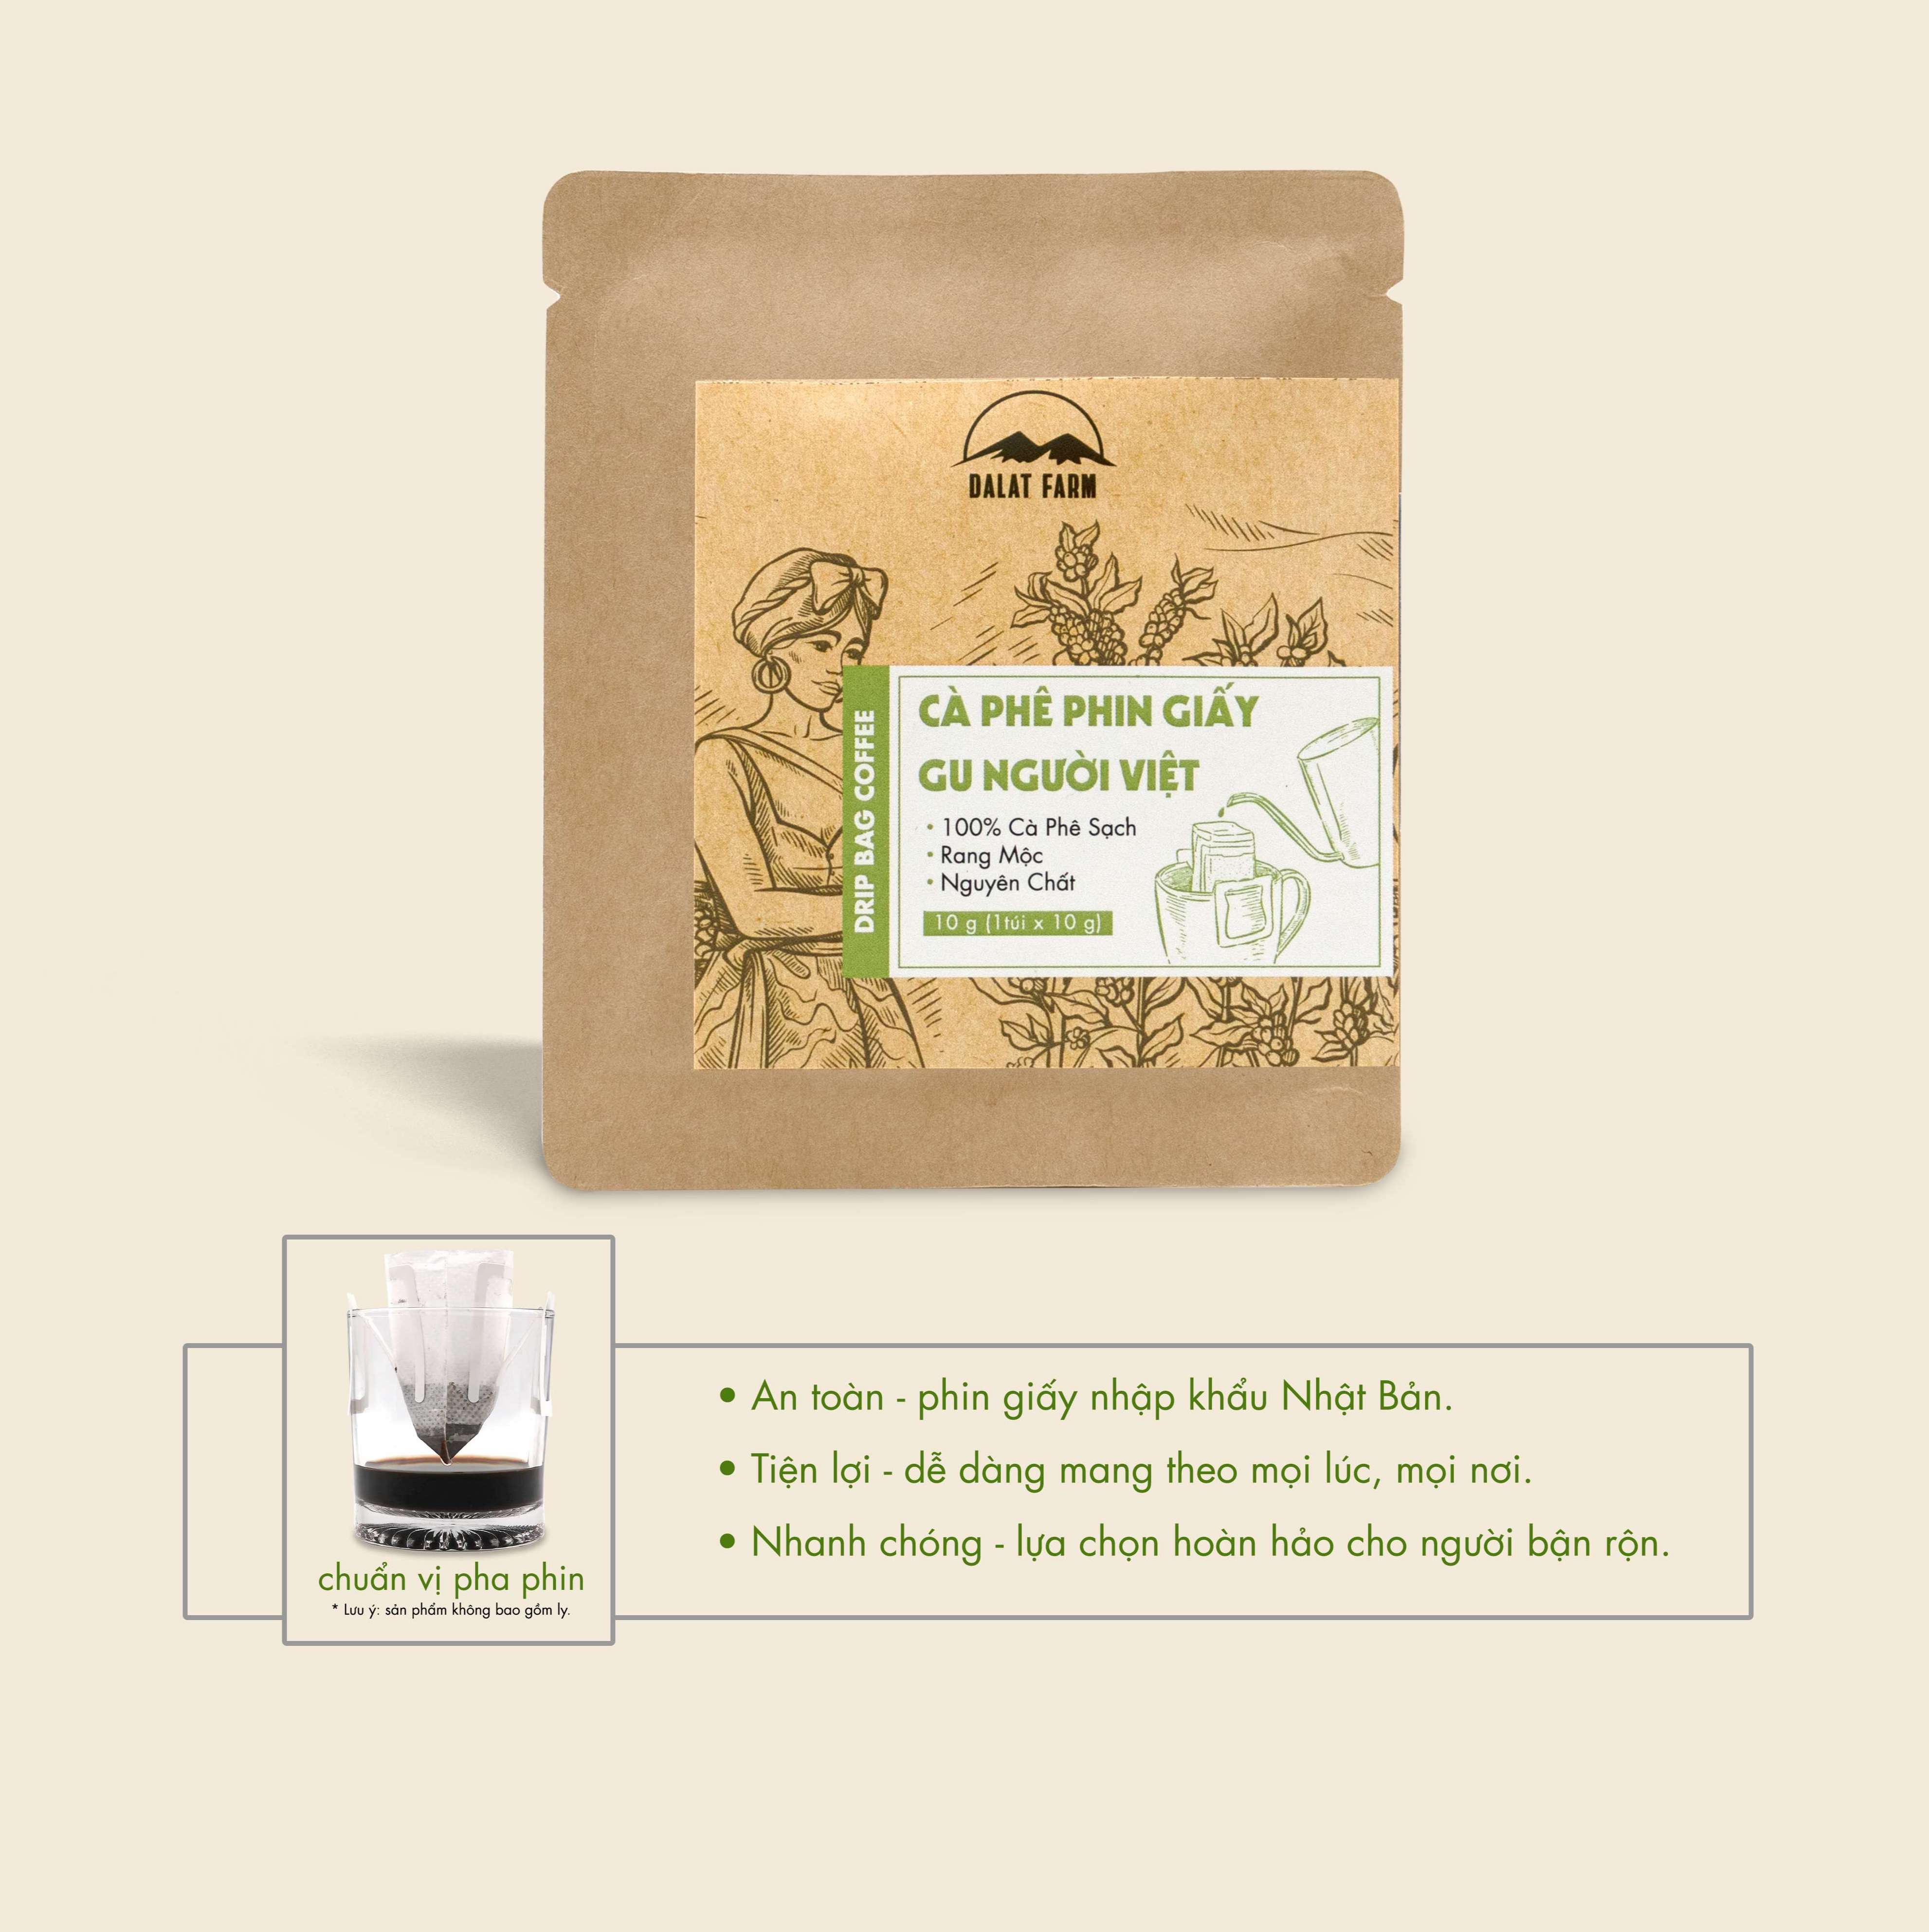 Cà phê phin giấy Gu Người Việt DalatFarm - Túi 10 g